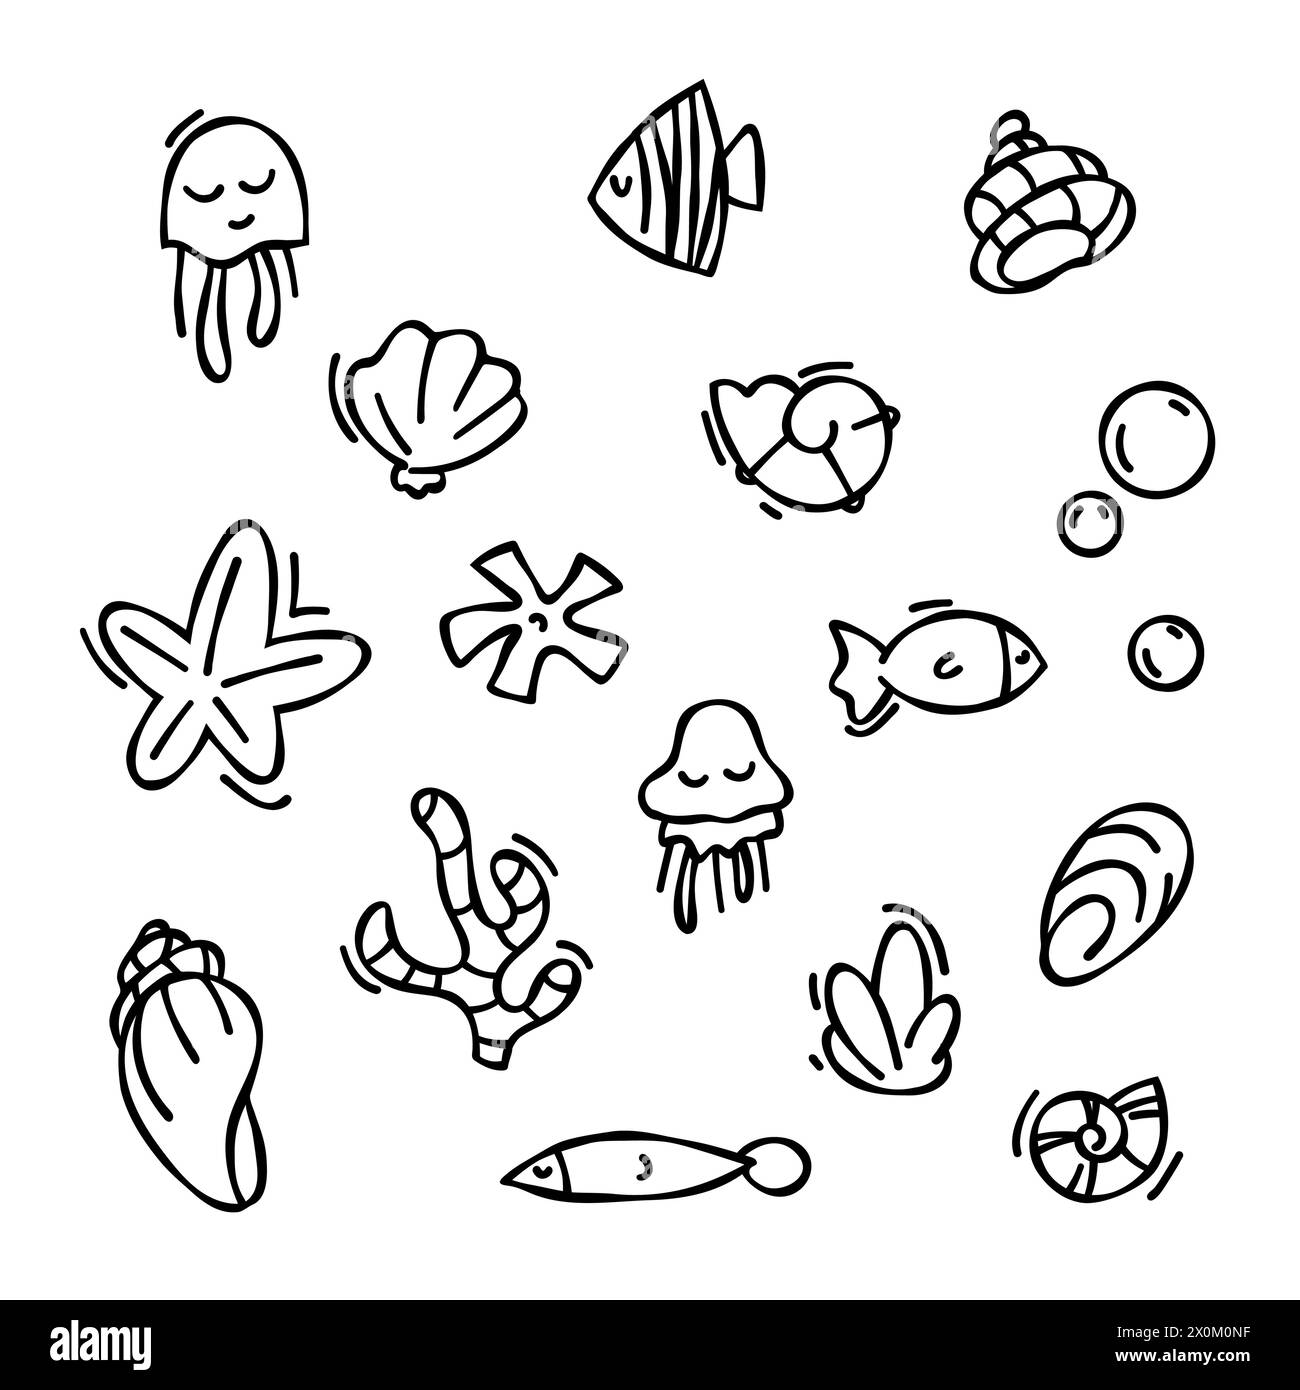 Ensemble d'éléments vectoriels dans le style doodle. coquillages dessinés, étoiles de mer, esquisse de contour noir éléments isolés sur fond blanc pour modèle de conception. OCE Illustration de Vecteur